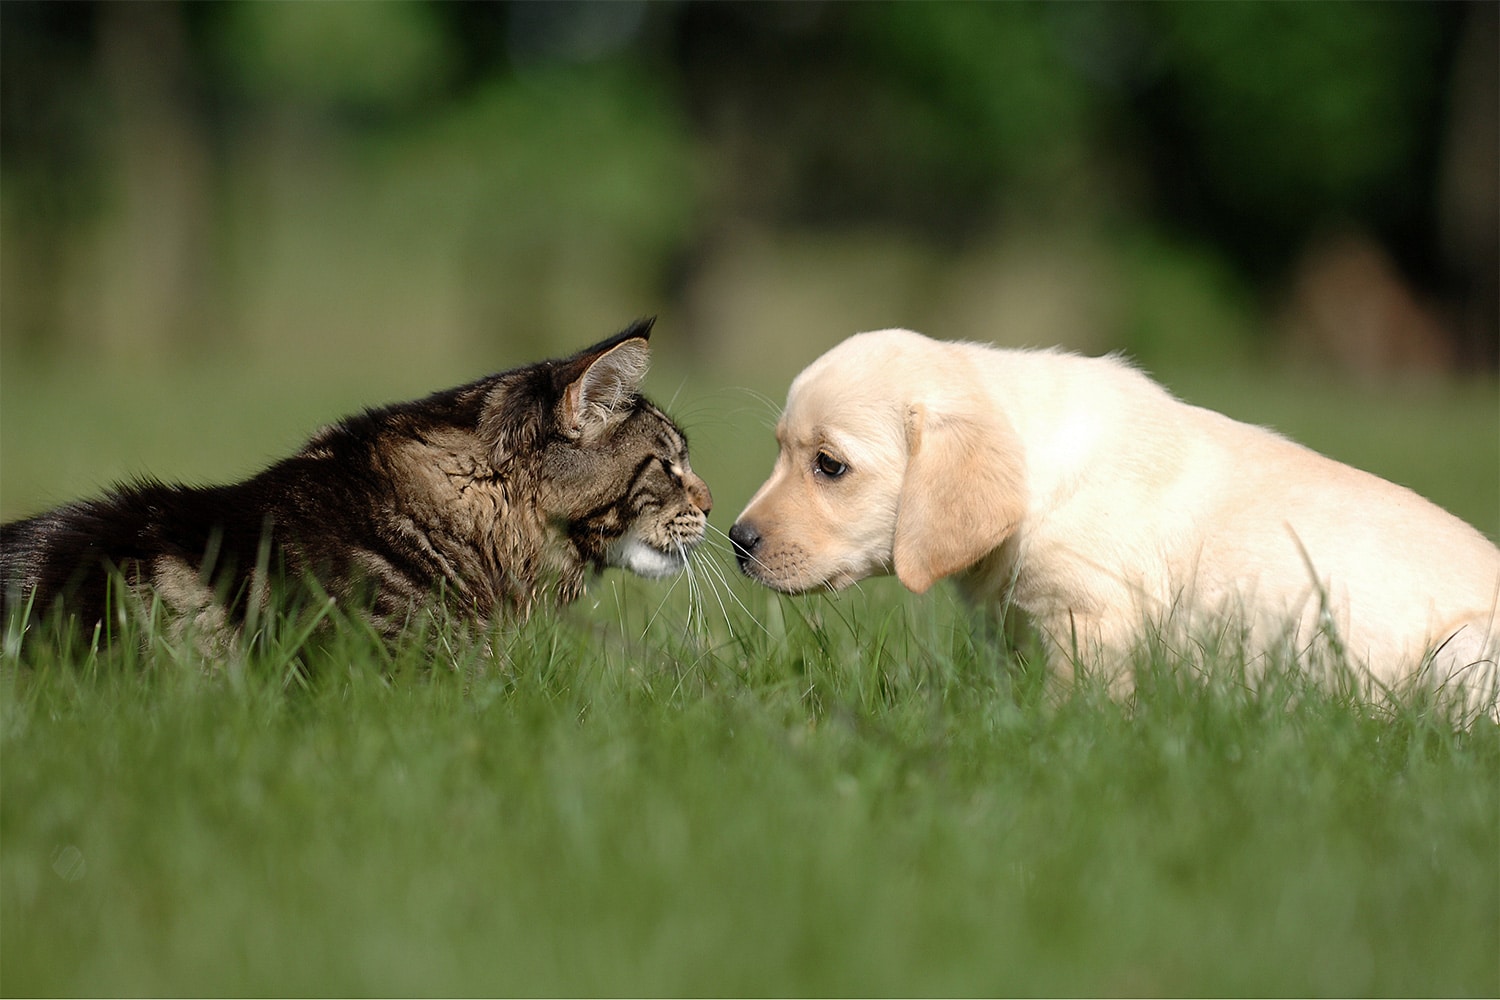 Katt og hund som kikker på hverandre, ses fra siden